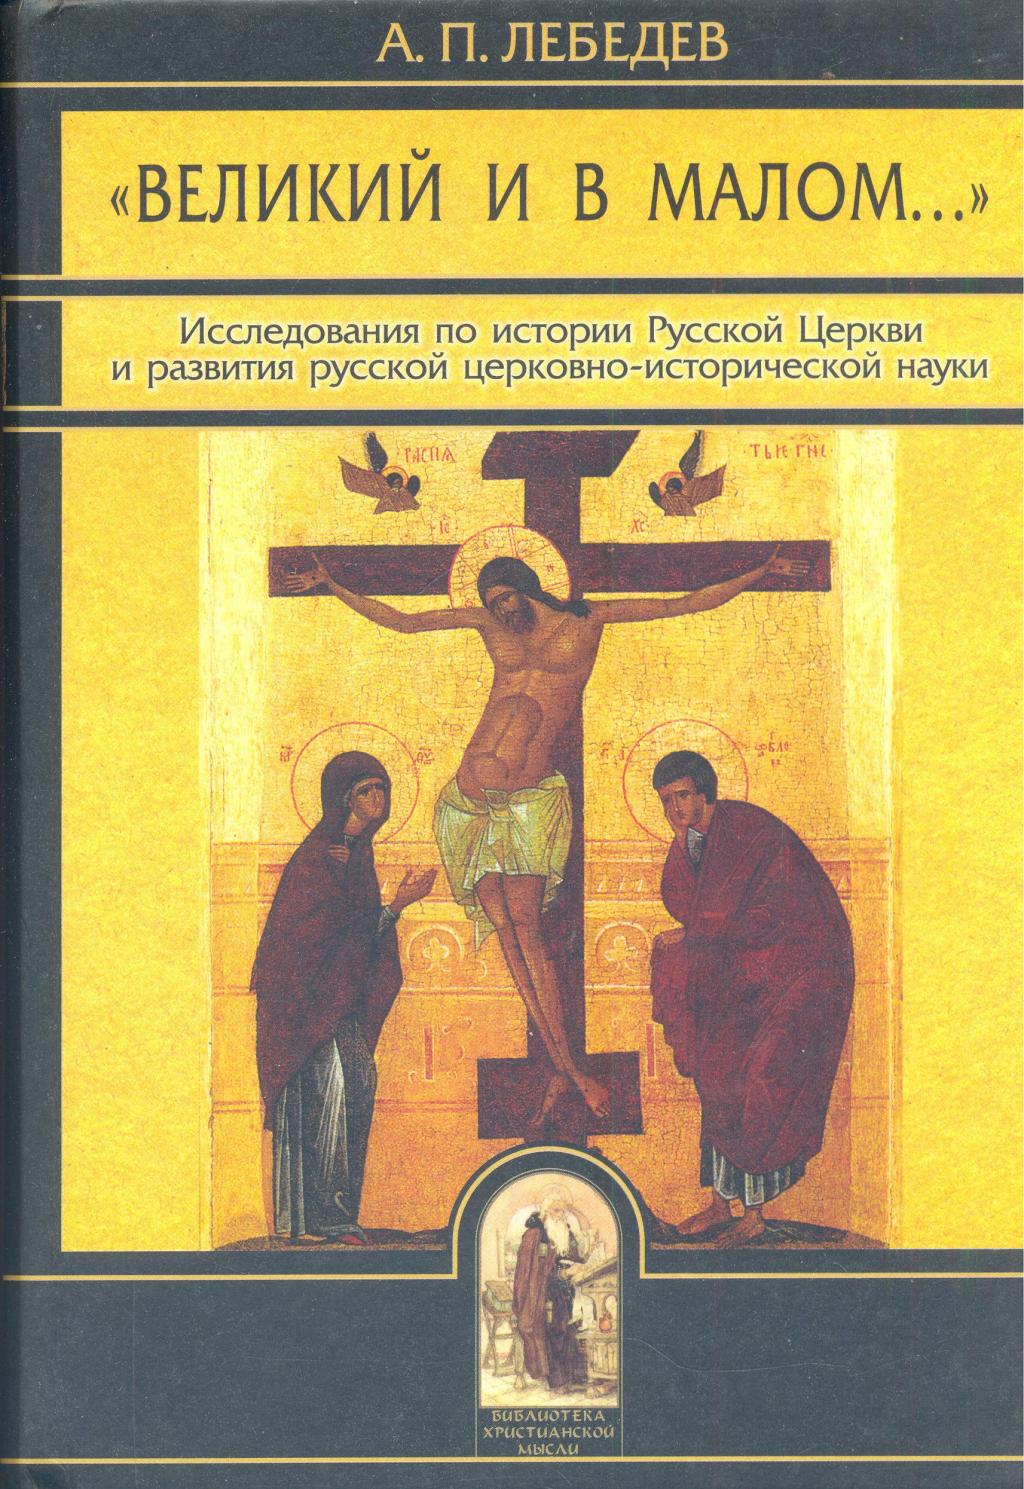 ”Великий и в малом...”  Развитие русской церковно-исторической науки